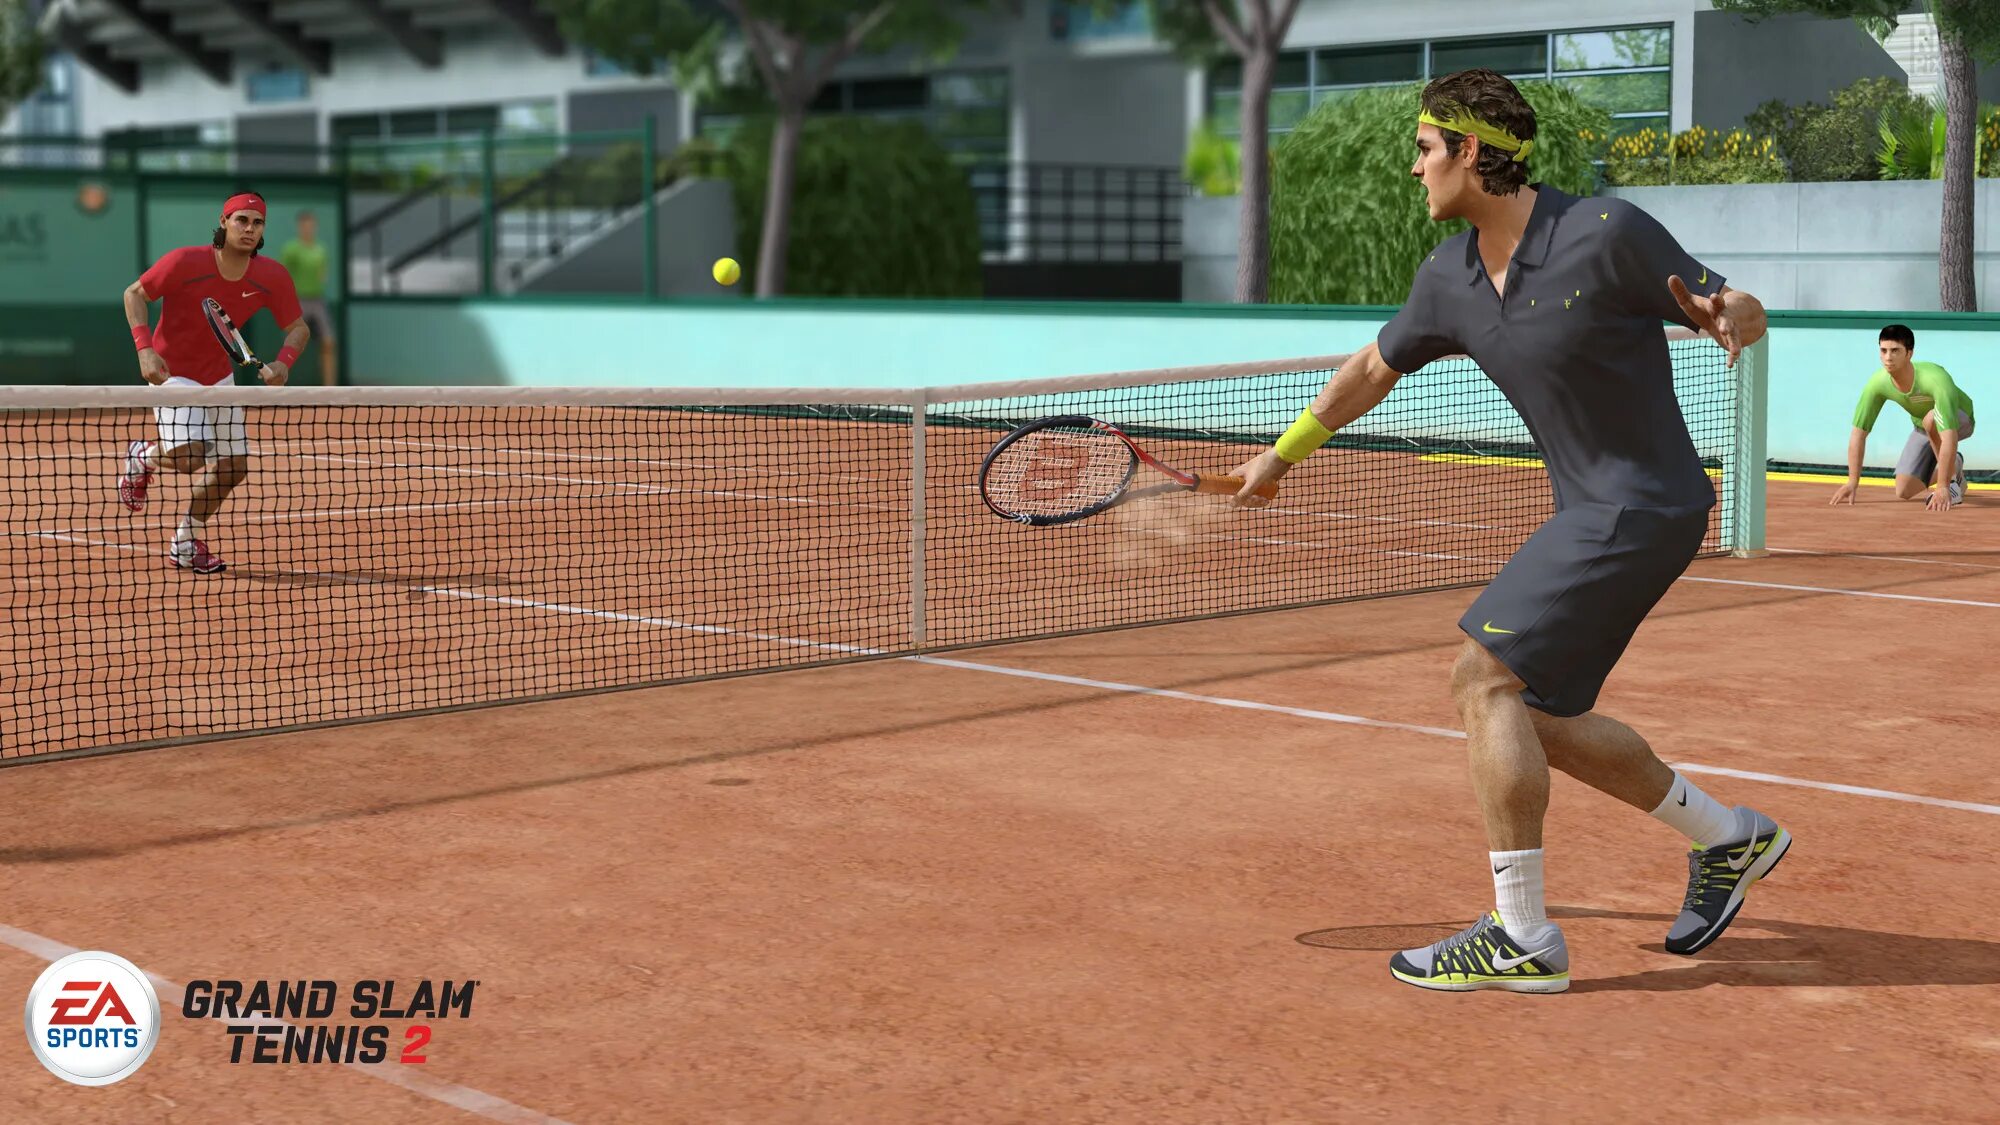 Игра теннис мужчины. Гранд-слэм теннис. Grand Slam Tennis 2. Игра в теннис. Спорт теннис.